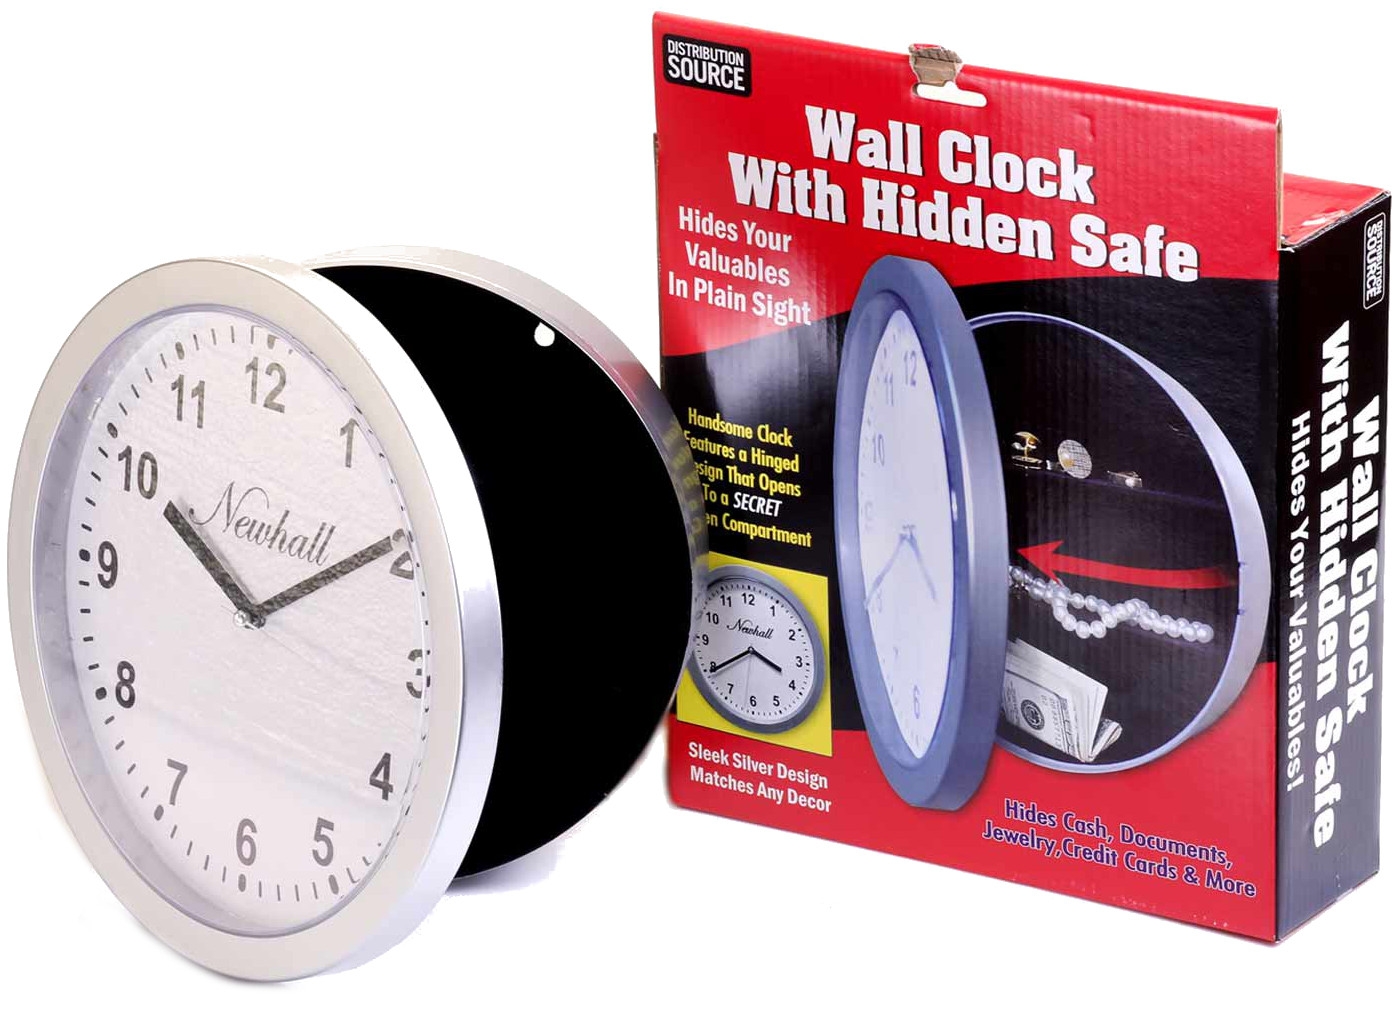 Wall clock secret safe